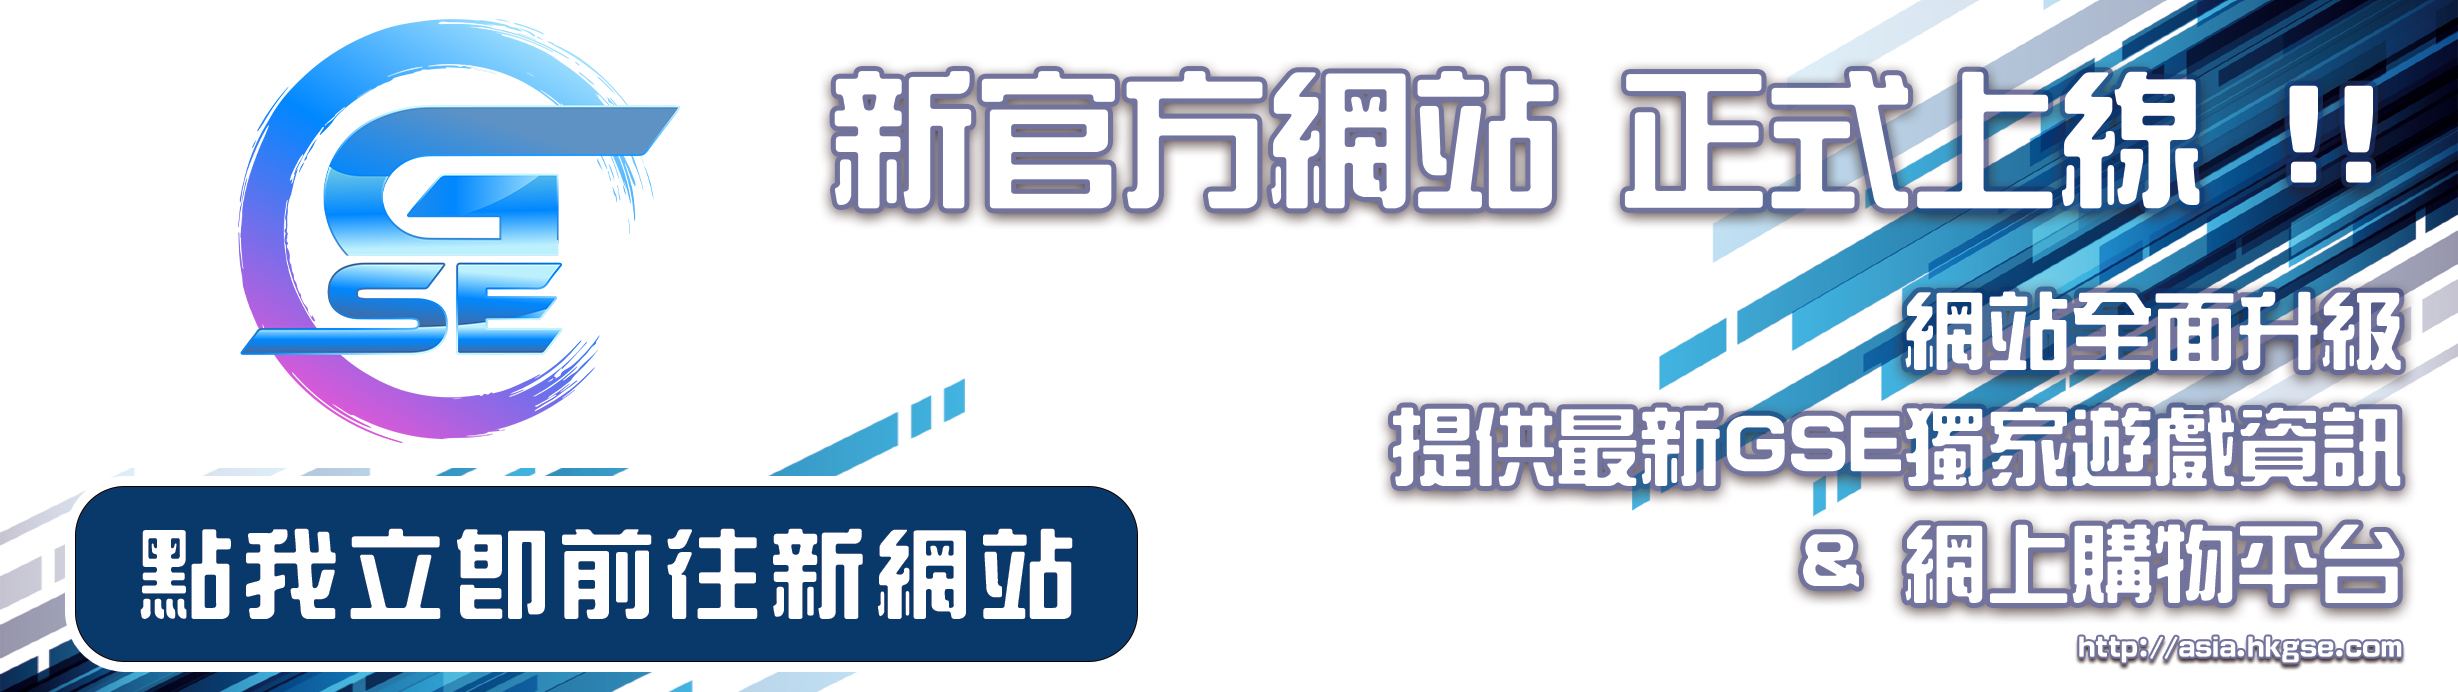 New Website Banner (CHI).jpg